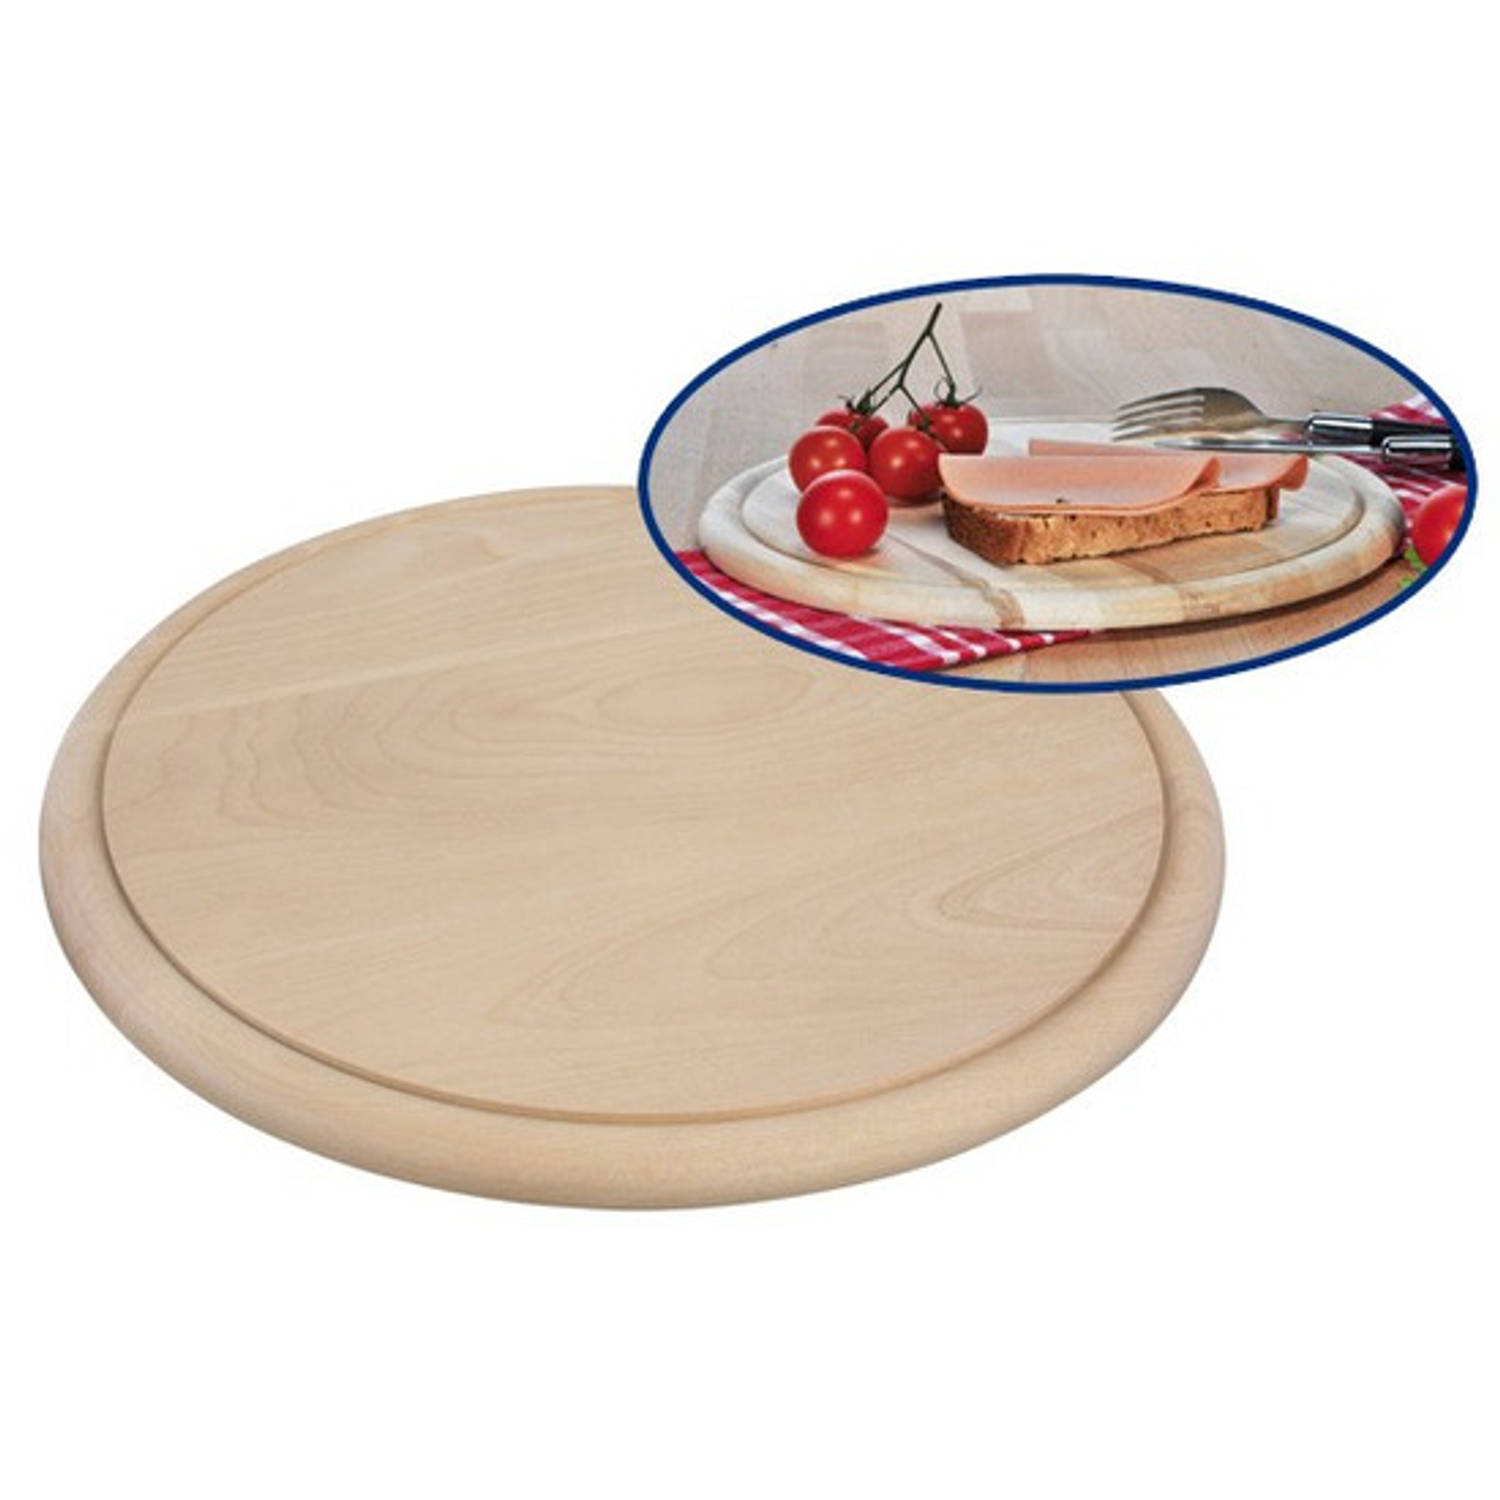 Ronde Houten Ham Ontbijt Planken-Broodplank-Serveer Plank 28 Cm Brood Snijden-Serveren Serveerplankj